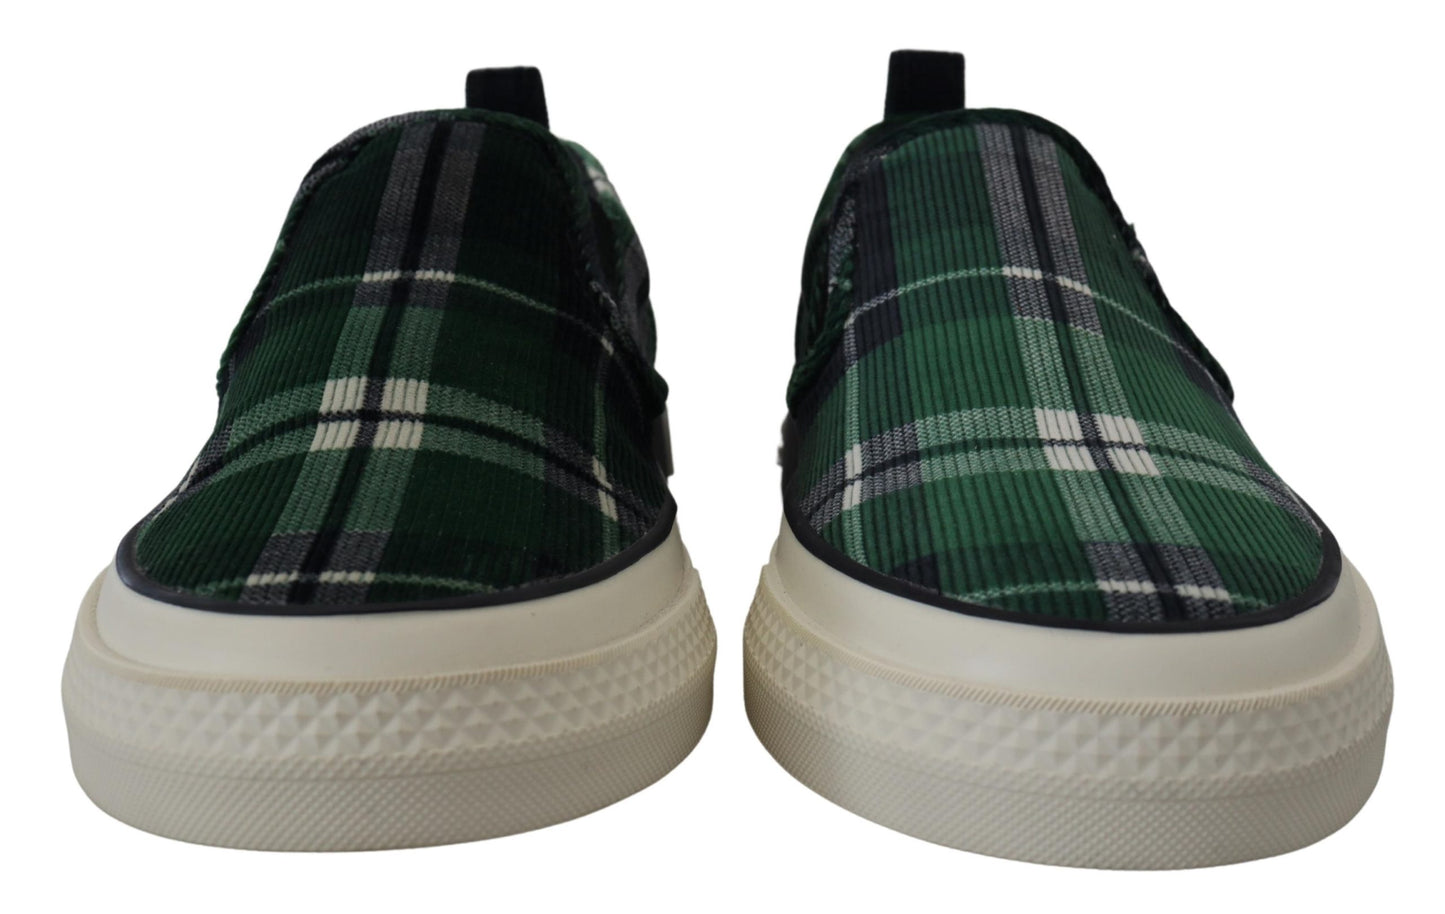 Elegant Velvet Green Loafers Sneakers